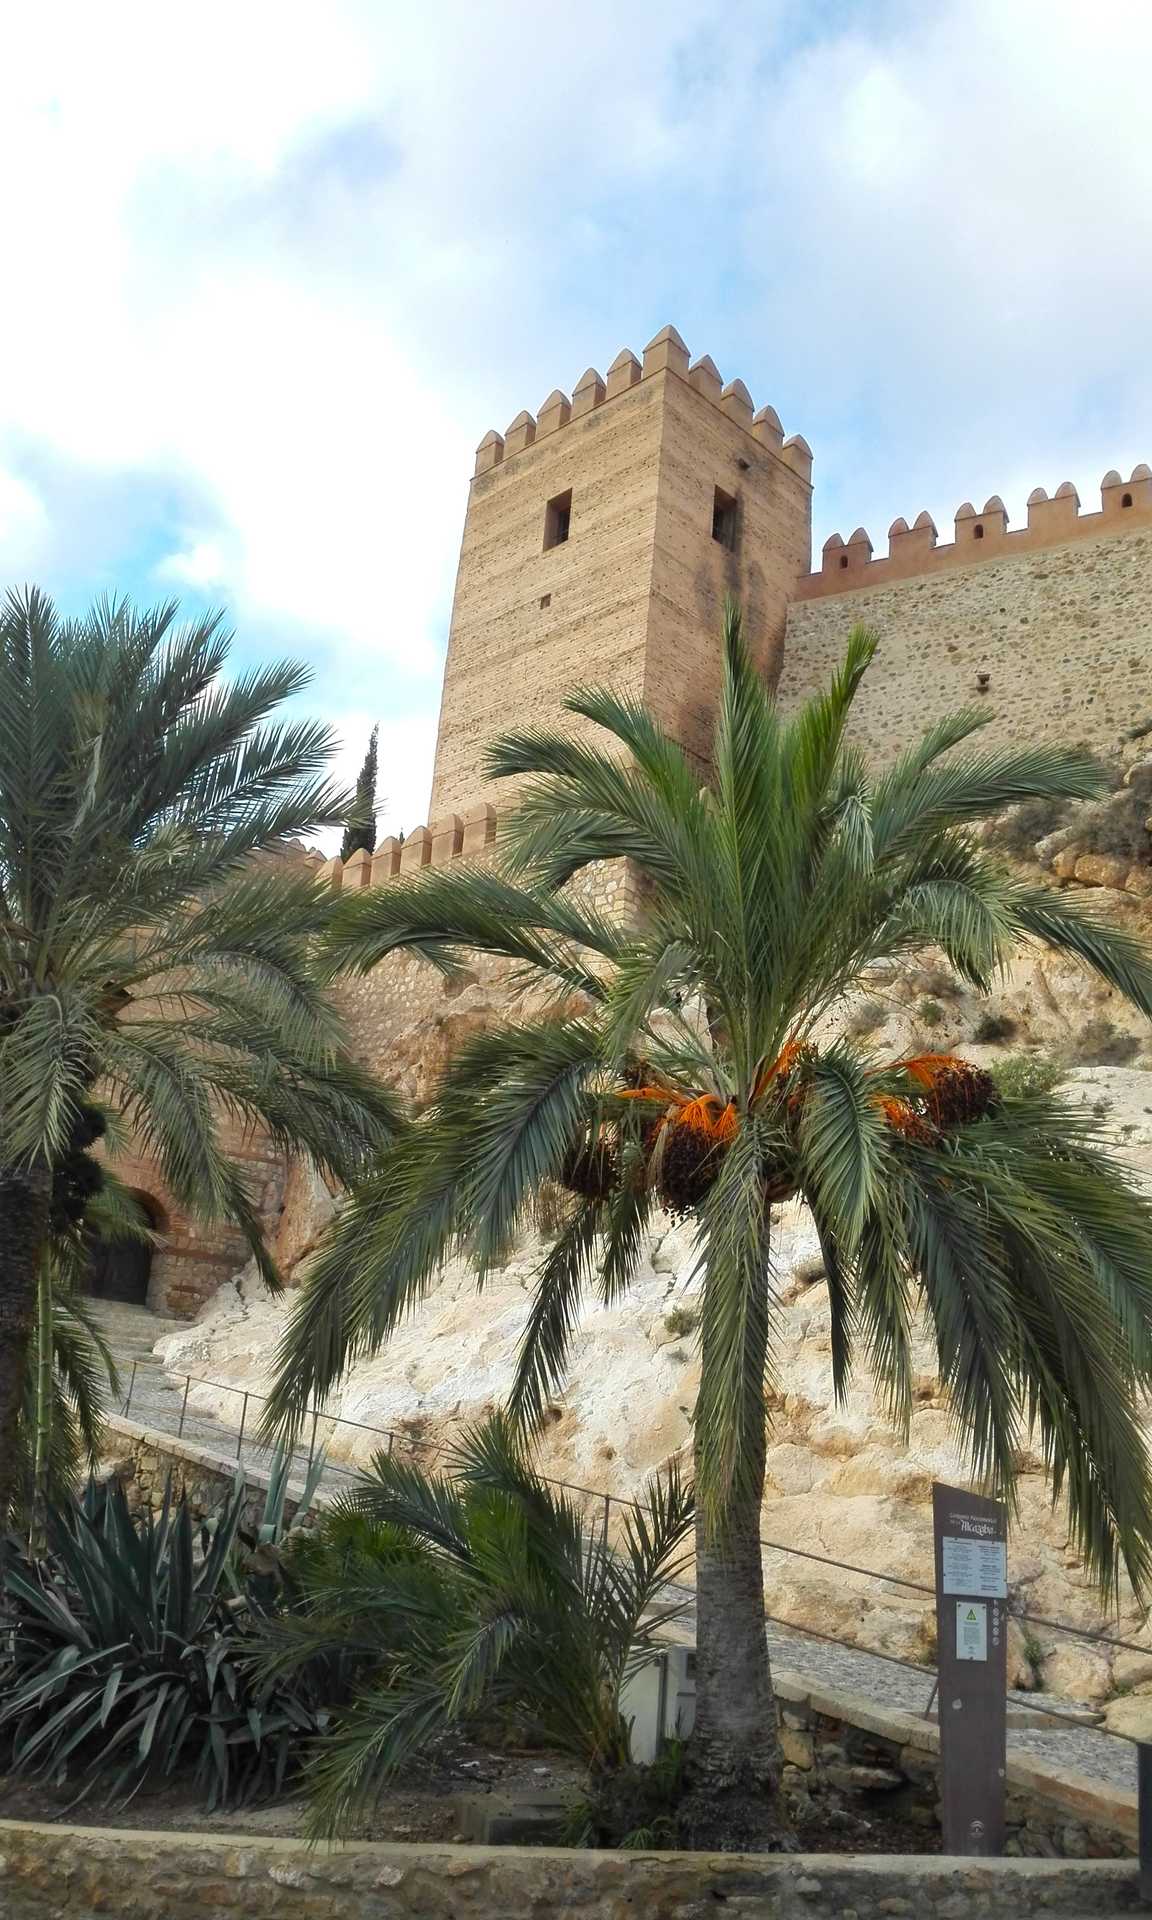 Cultura Vista de torre de la Alcazaba Almería.jpg